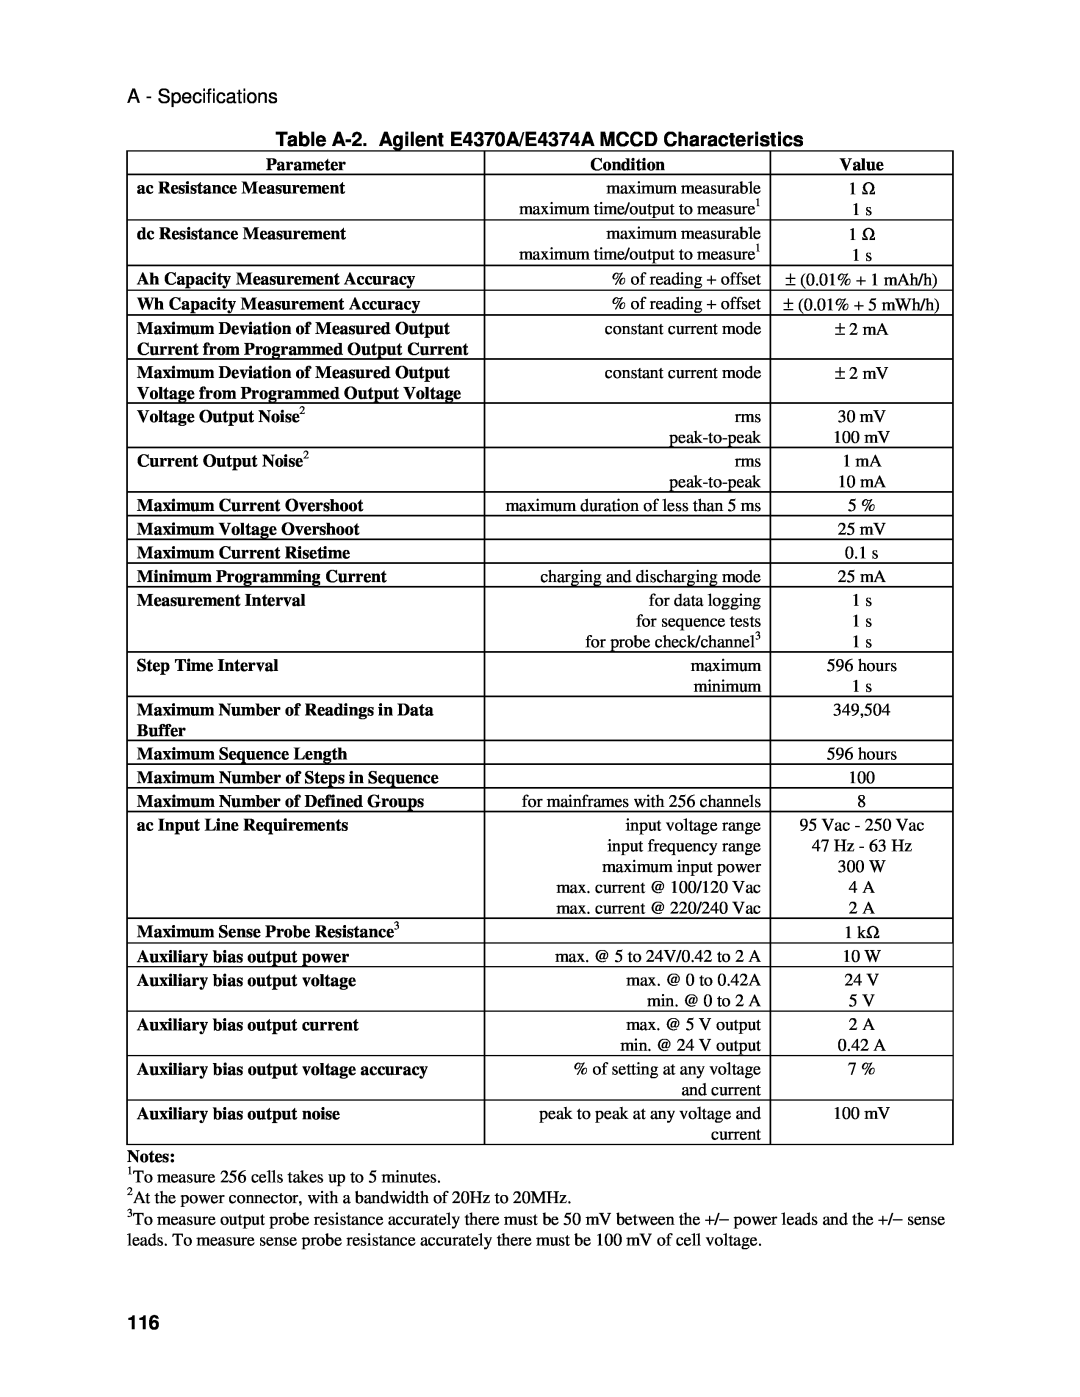 Agilent Technologies E4371A manual A - Specifications, Table A-2. Agilent E4370A/E4374A MCCD Characteristics 